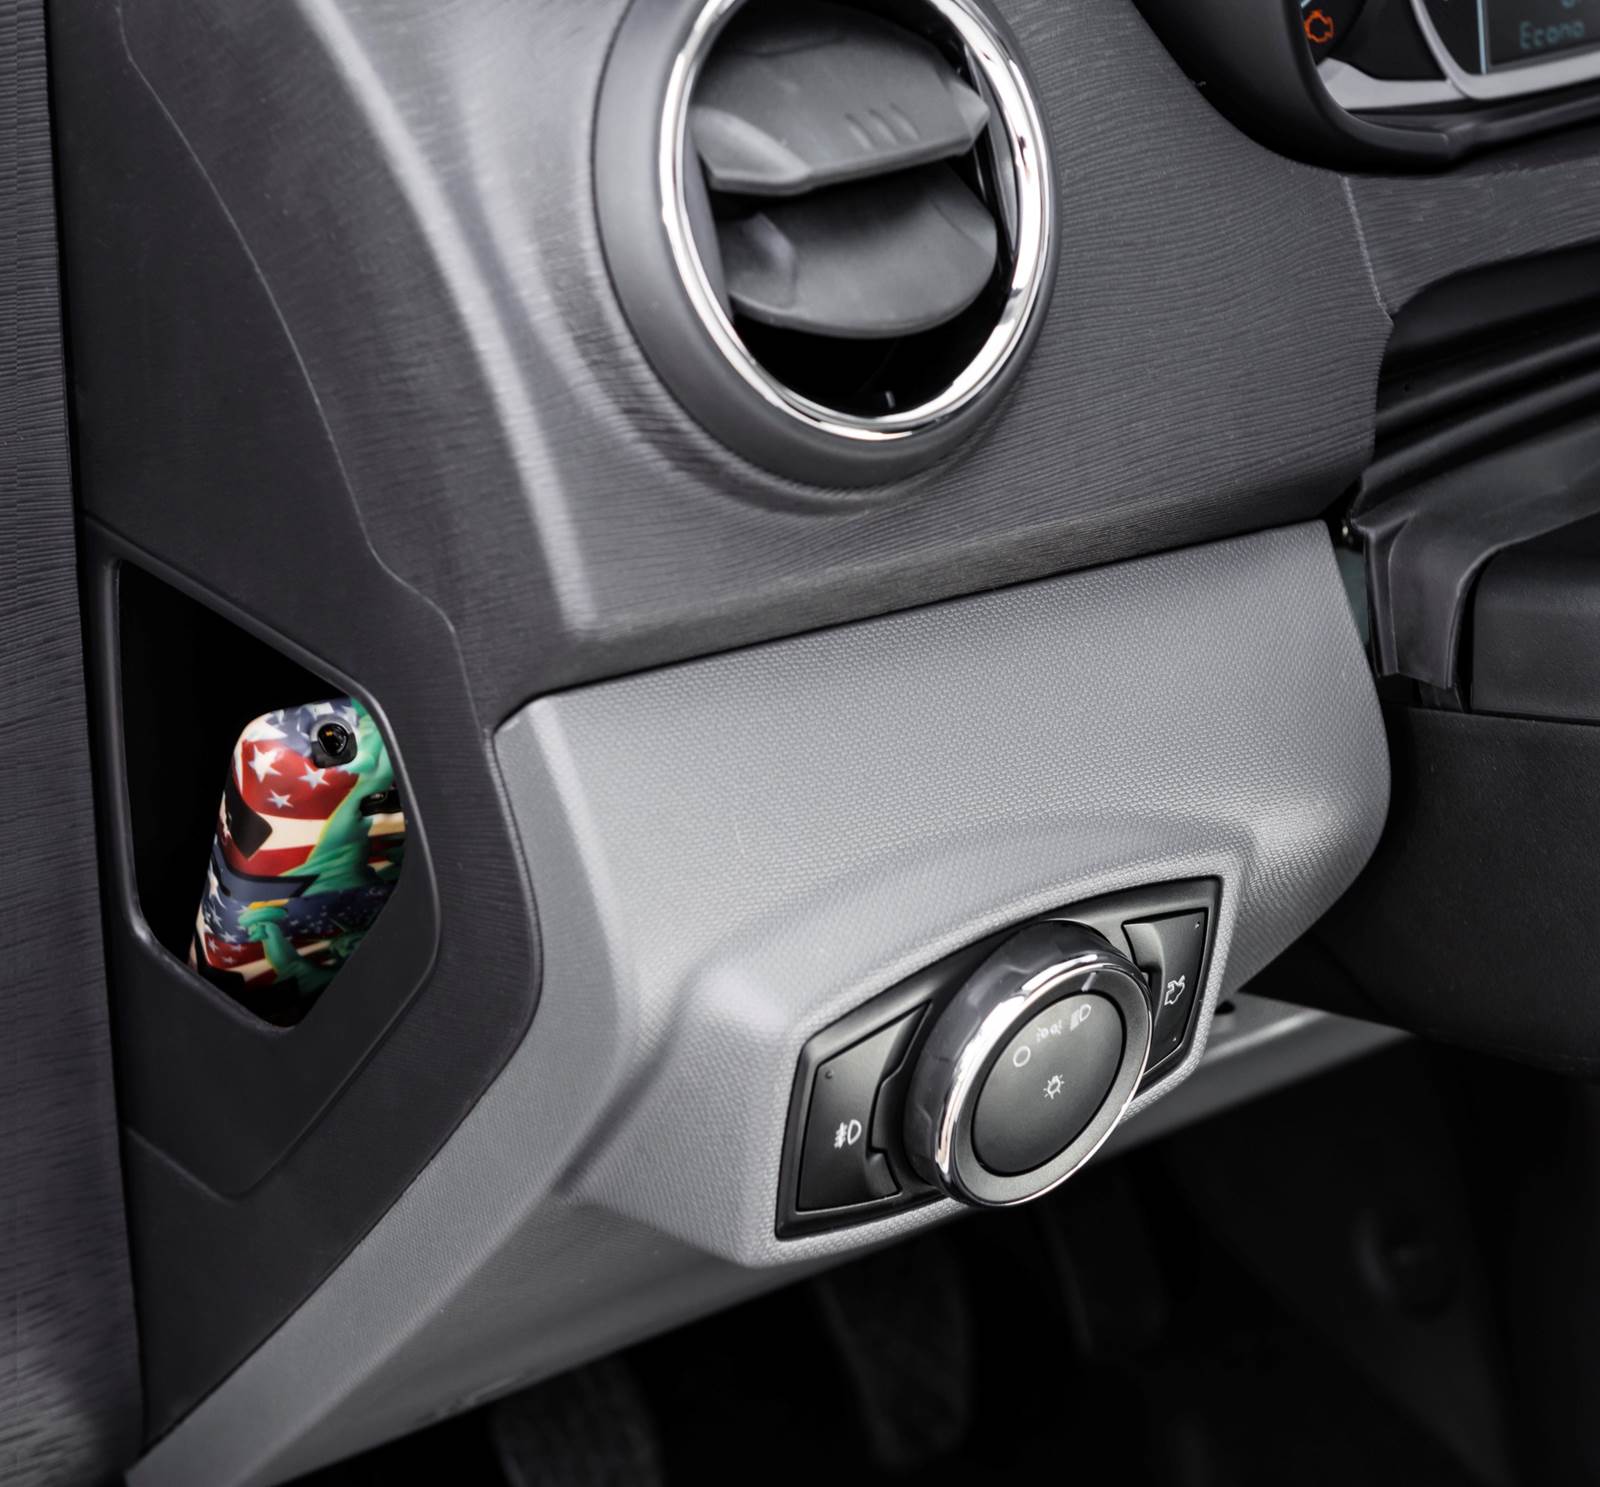 Novo Ford Ka 2015 - interior - porta-objetos de valor